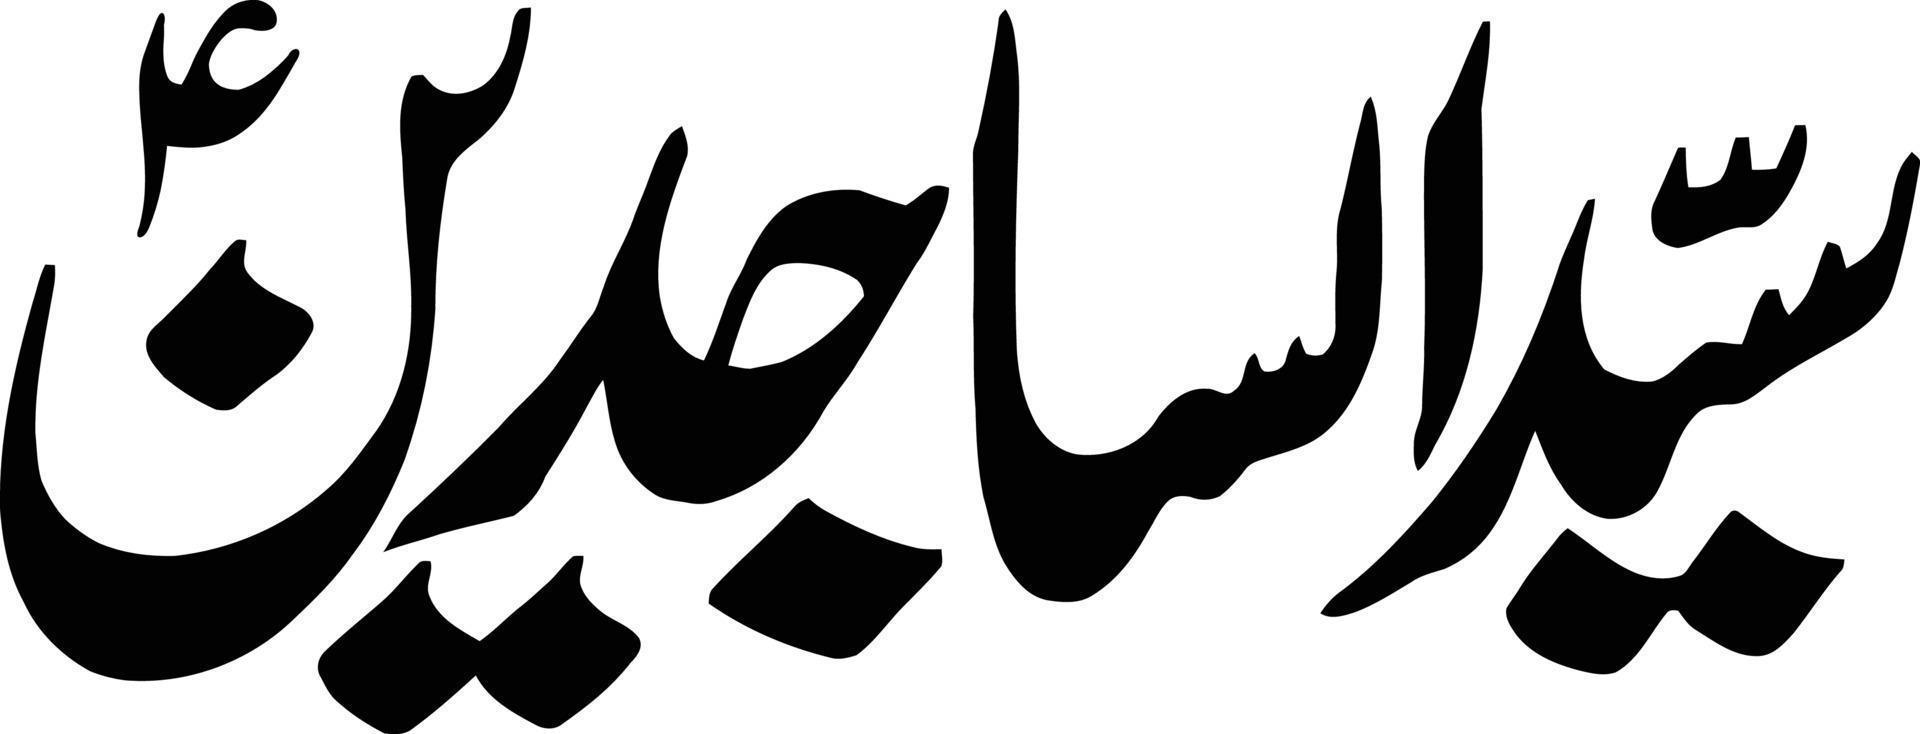 detto alsajedeen titolo islamico urdu Arabo calligrafia gratuito vettore